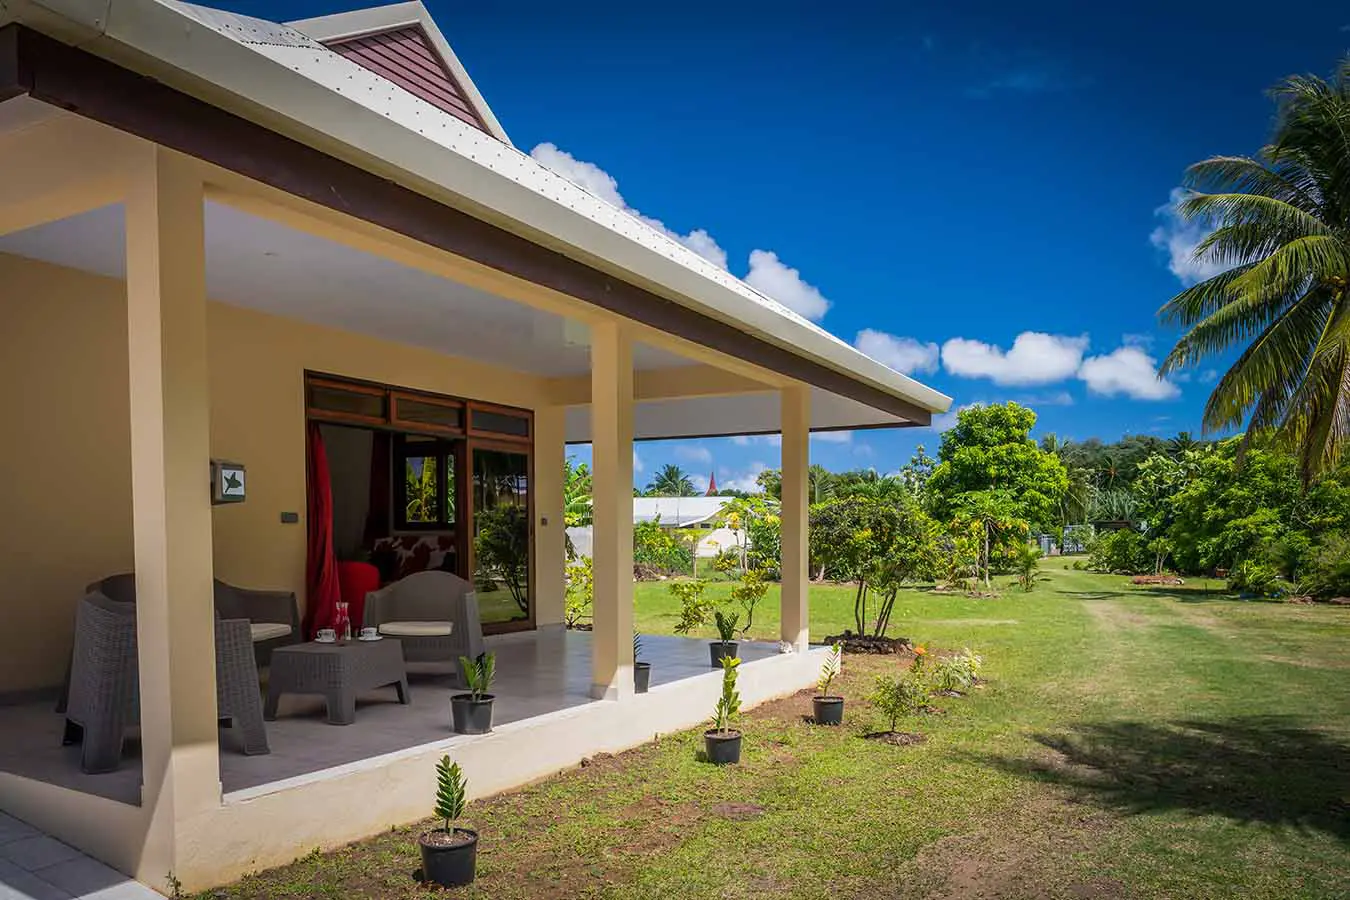 Garden and terrace in our Bora Bora vacation home